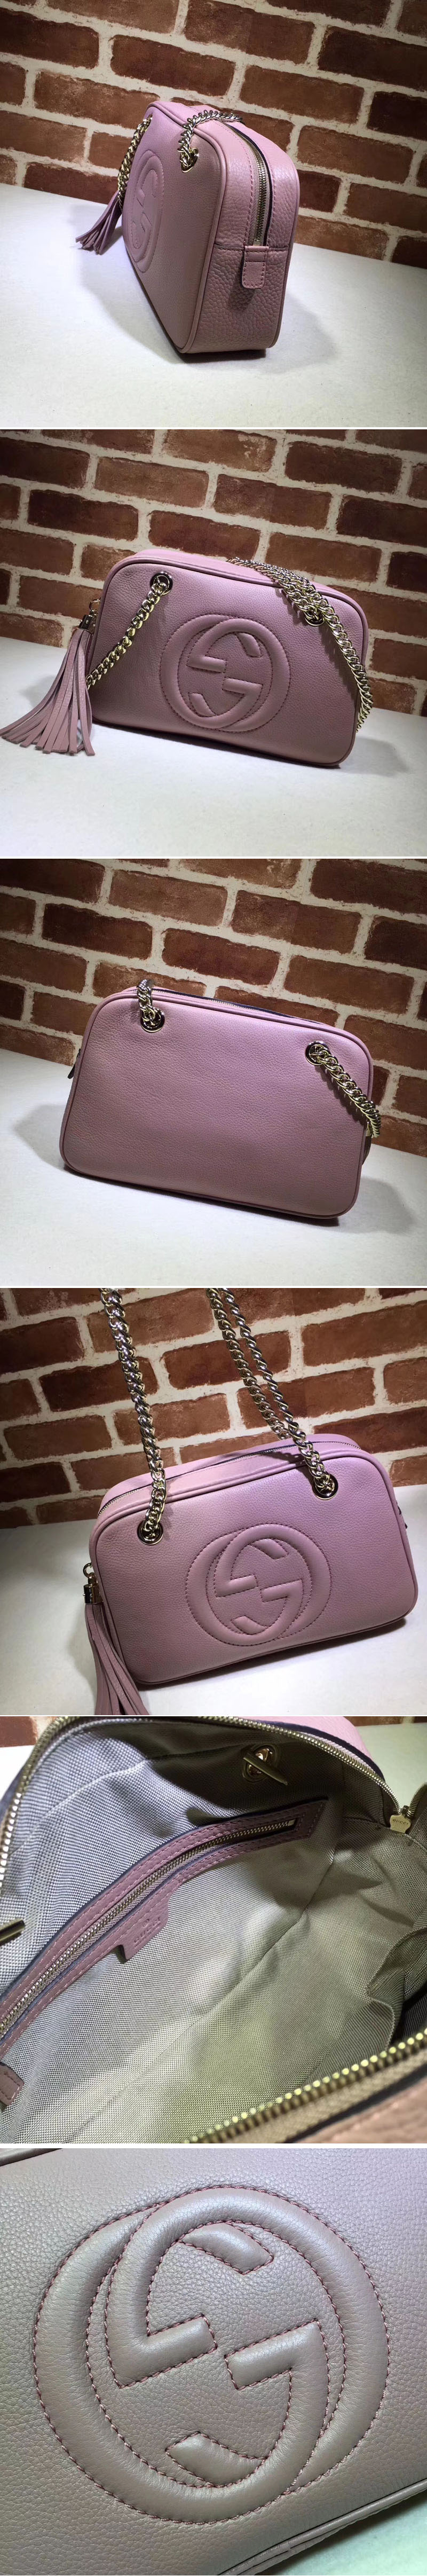 Replica Gucci 308983 Soho Shoulder Bags Pink